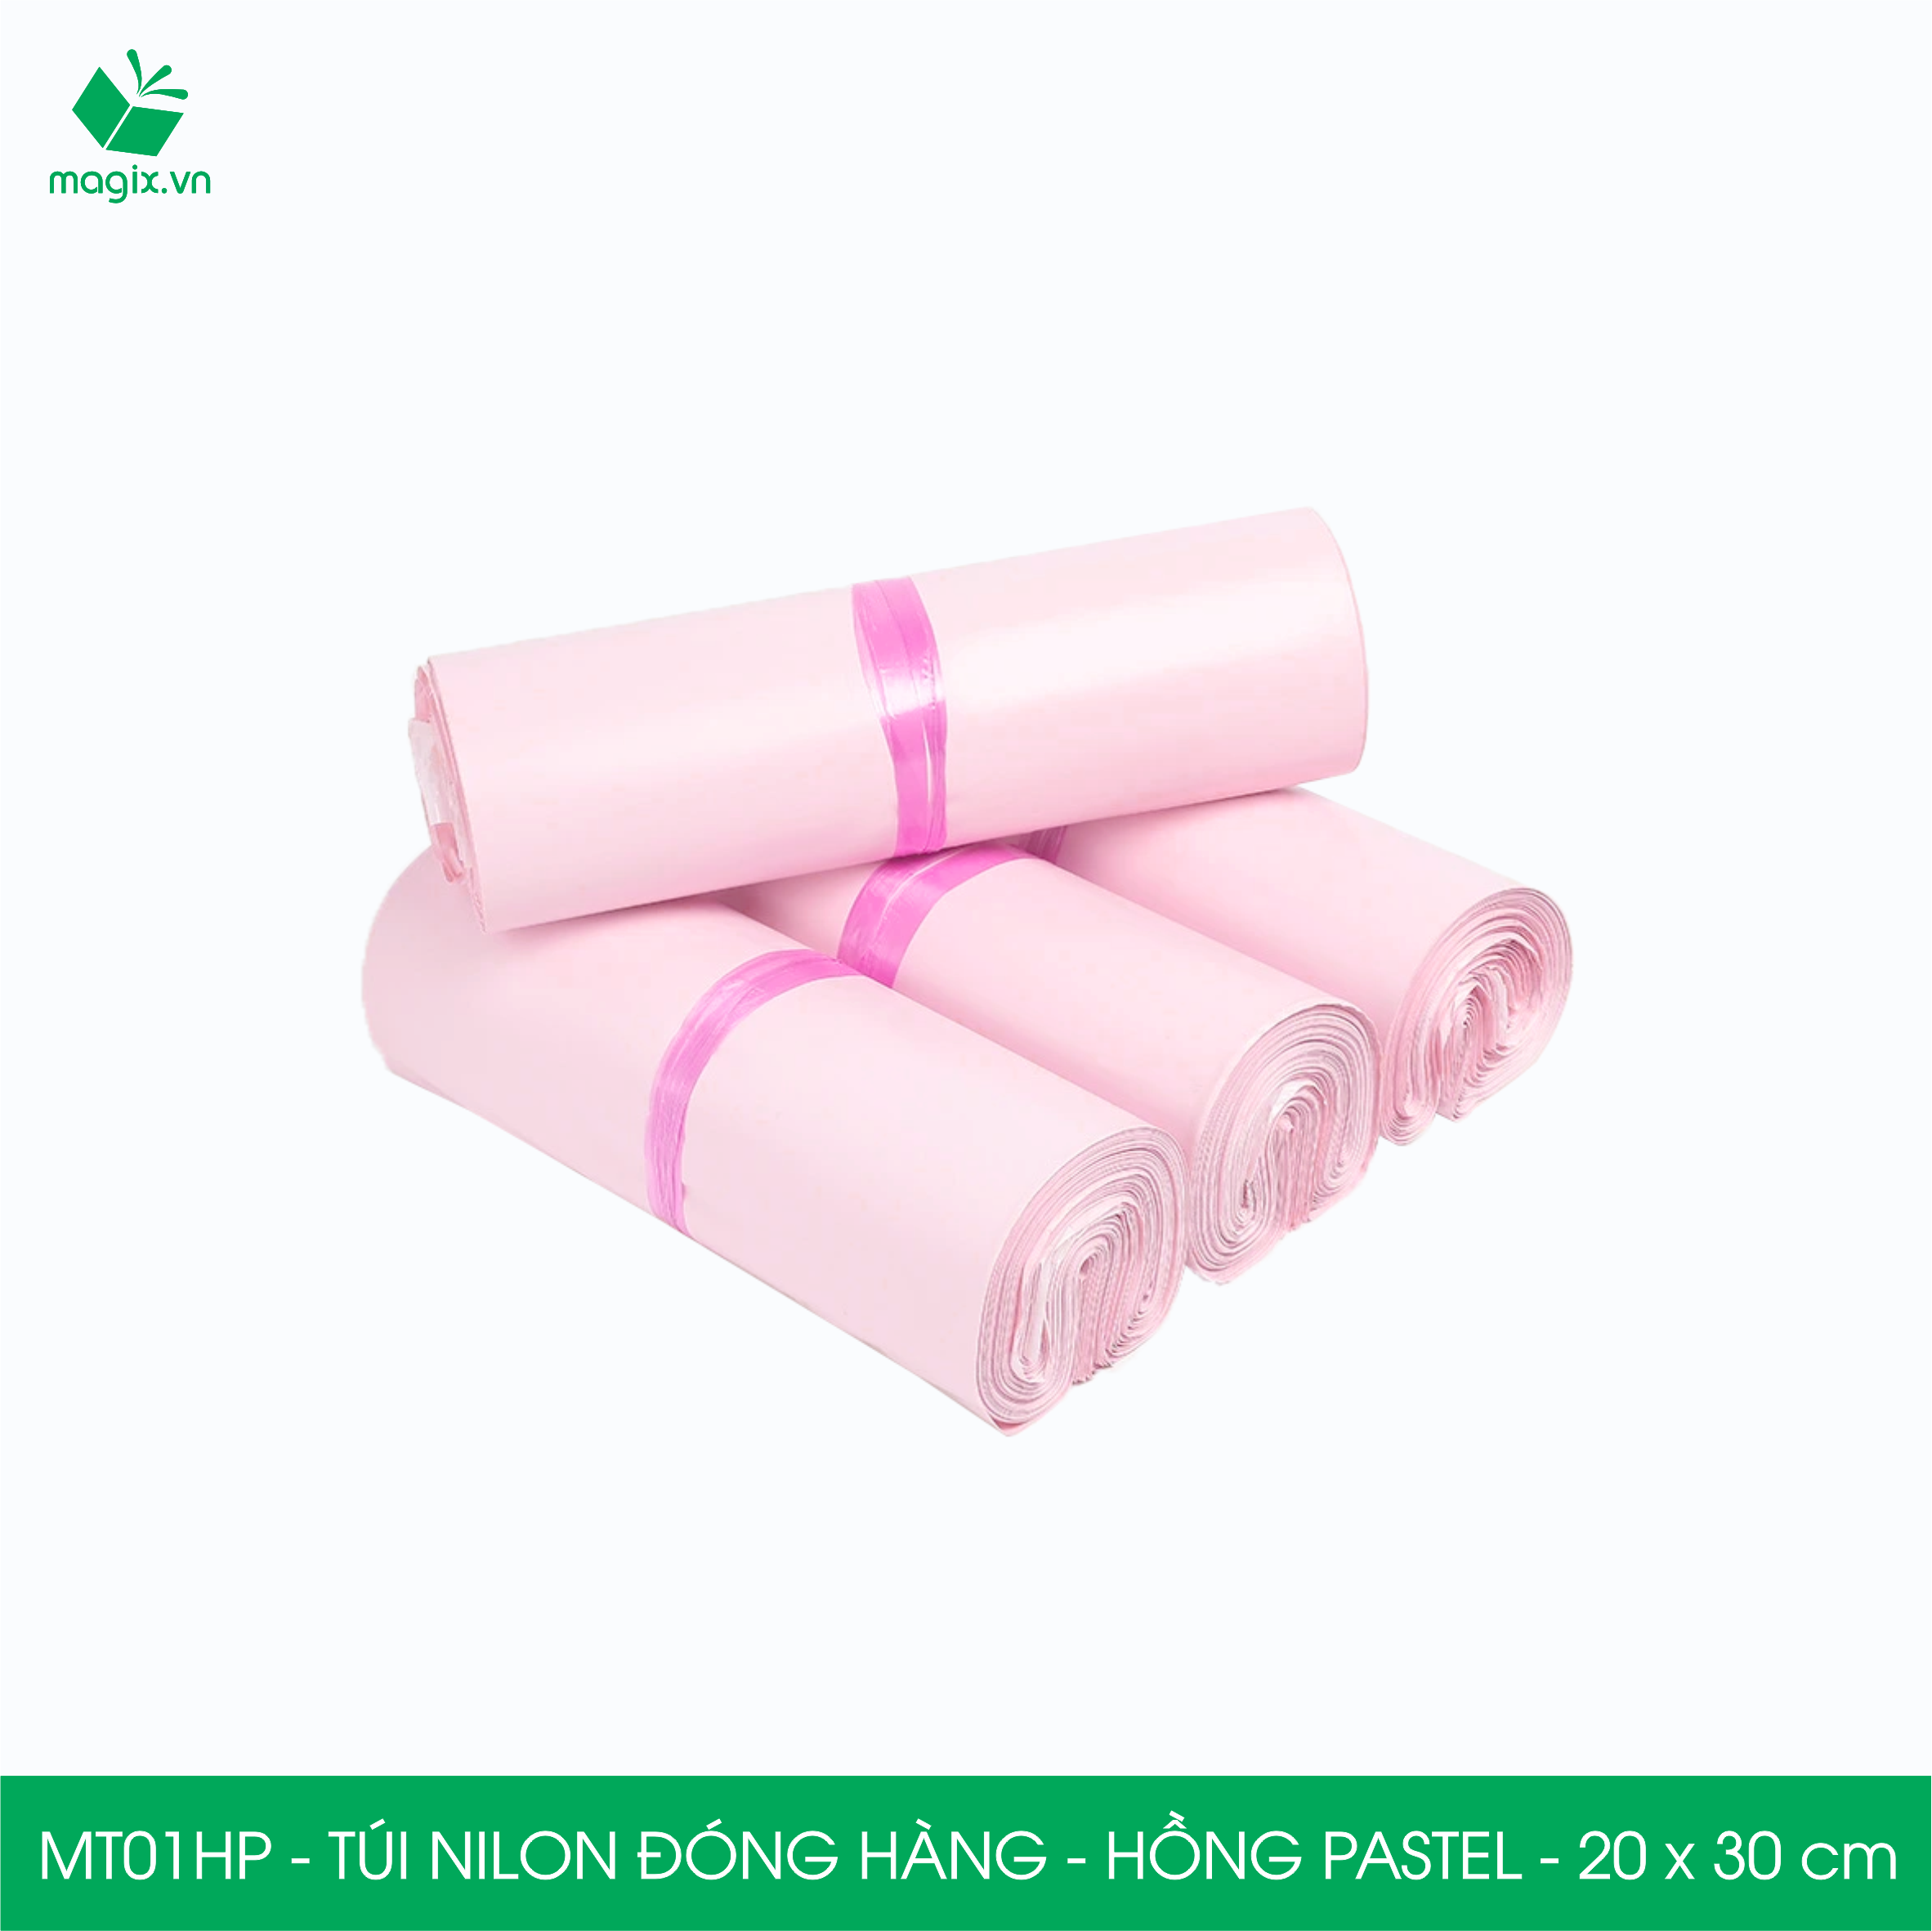 MT01HP - 20x30 cm - Túi nilon gói hàng - 300 túi niêm phong đóng hàng màu hồng pastel